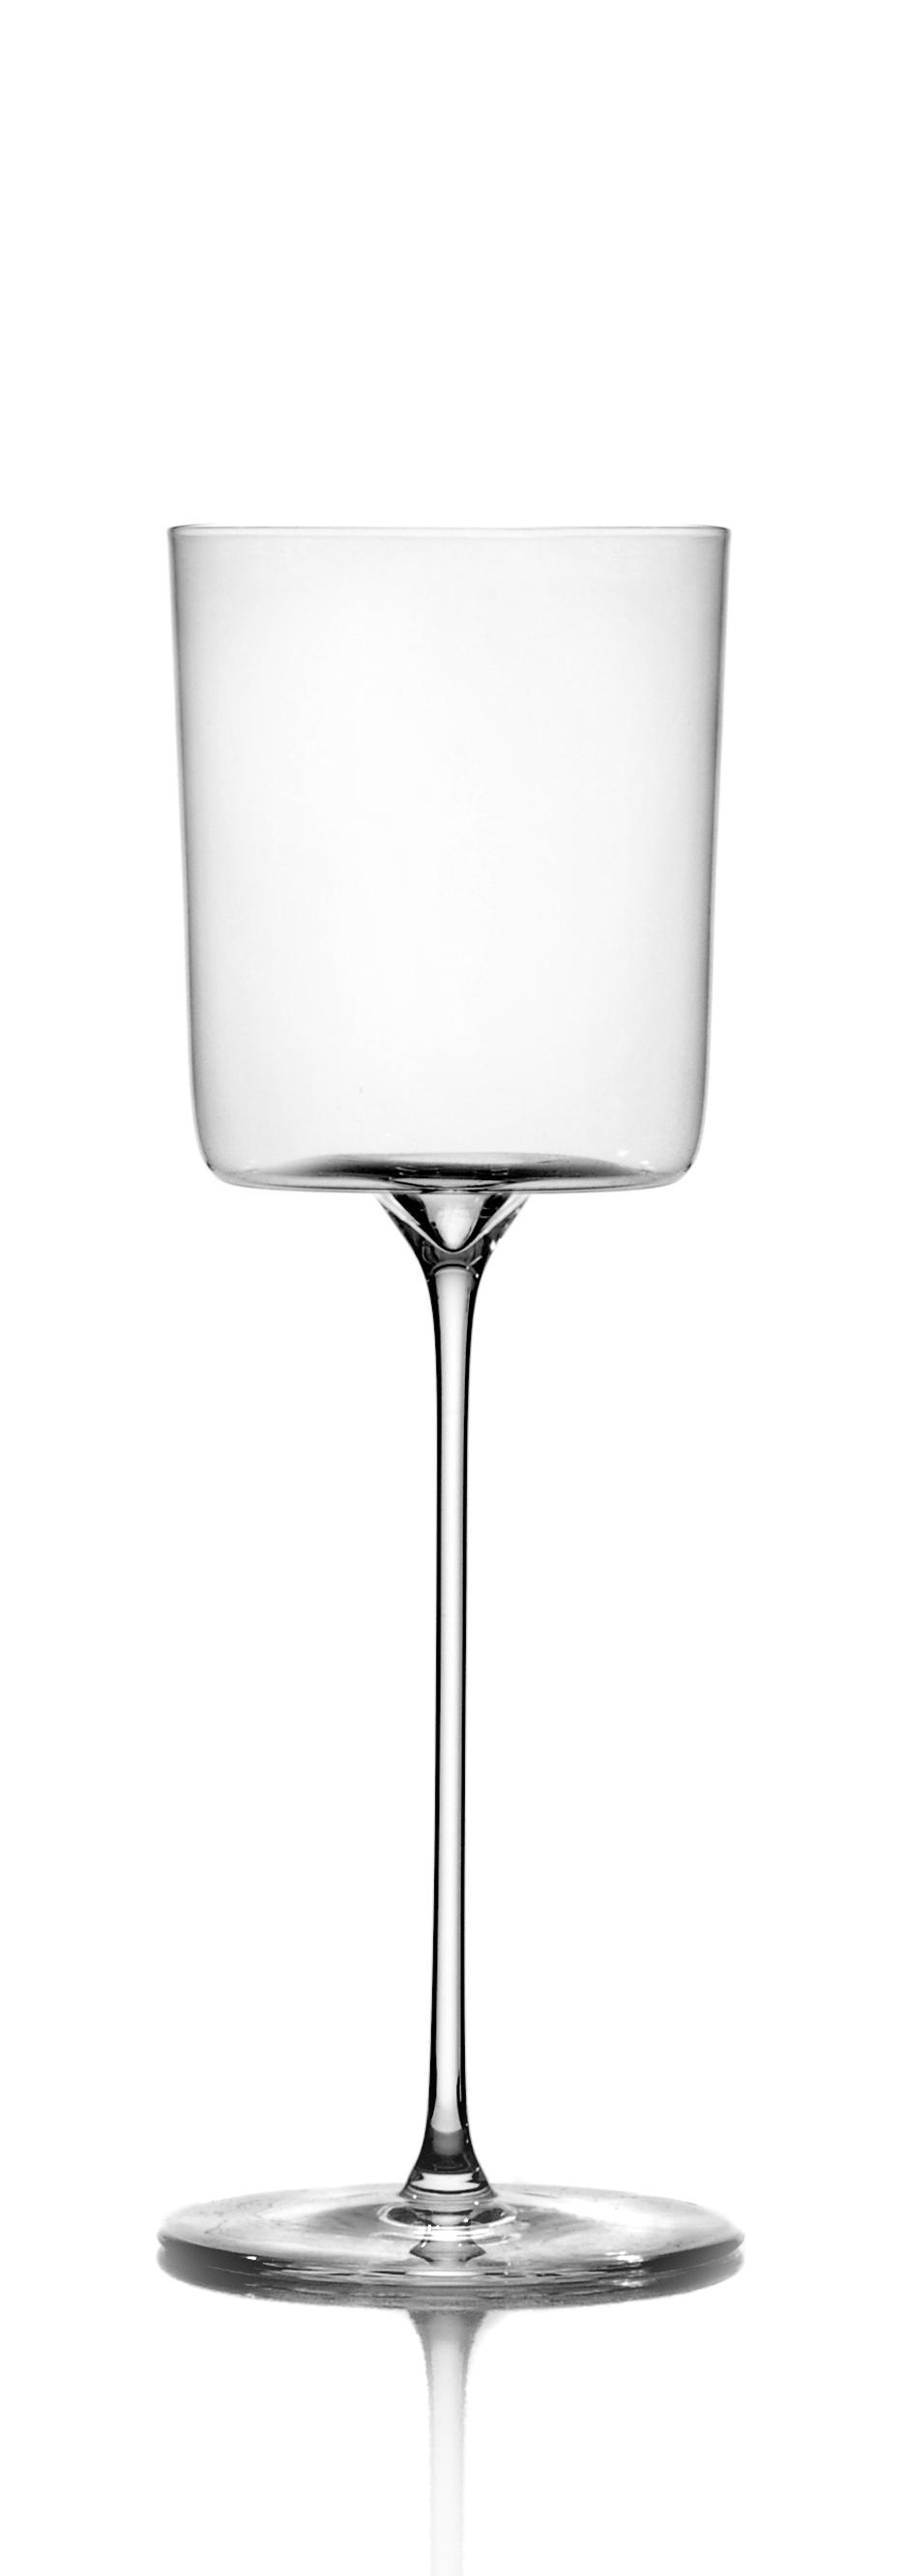 Ichendorf Water goblet Arles collection